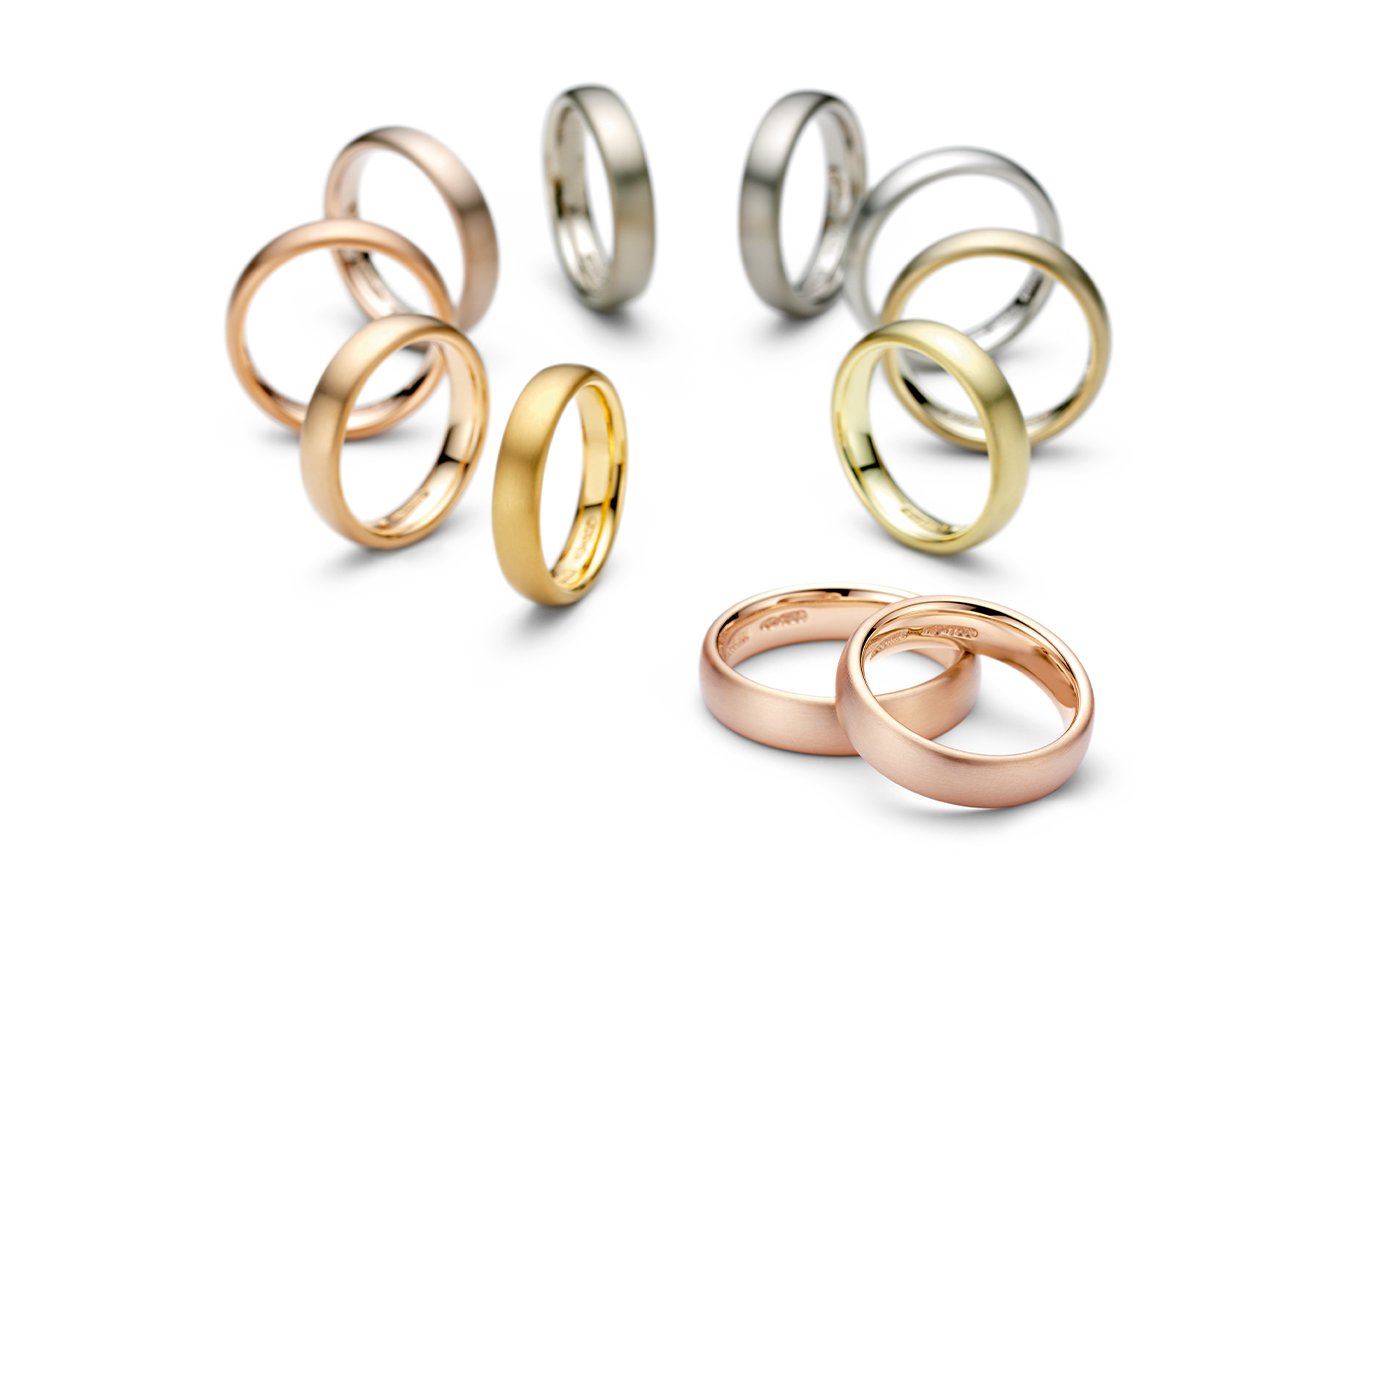 Rings, Wedding Niessing Rings – Engagement Tension Rings,